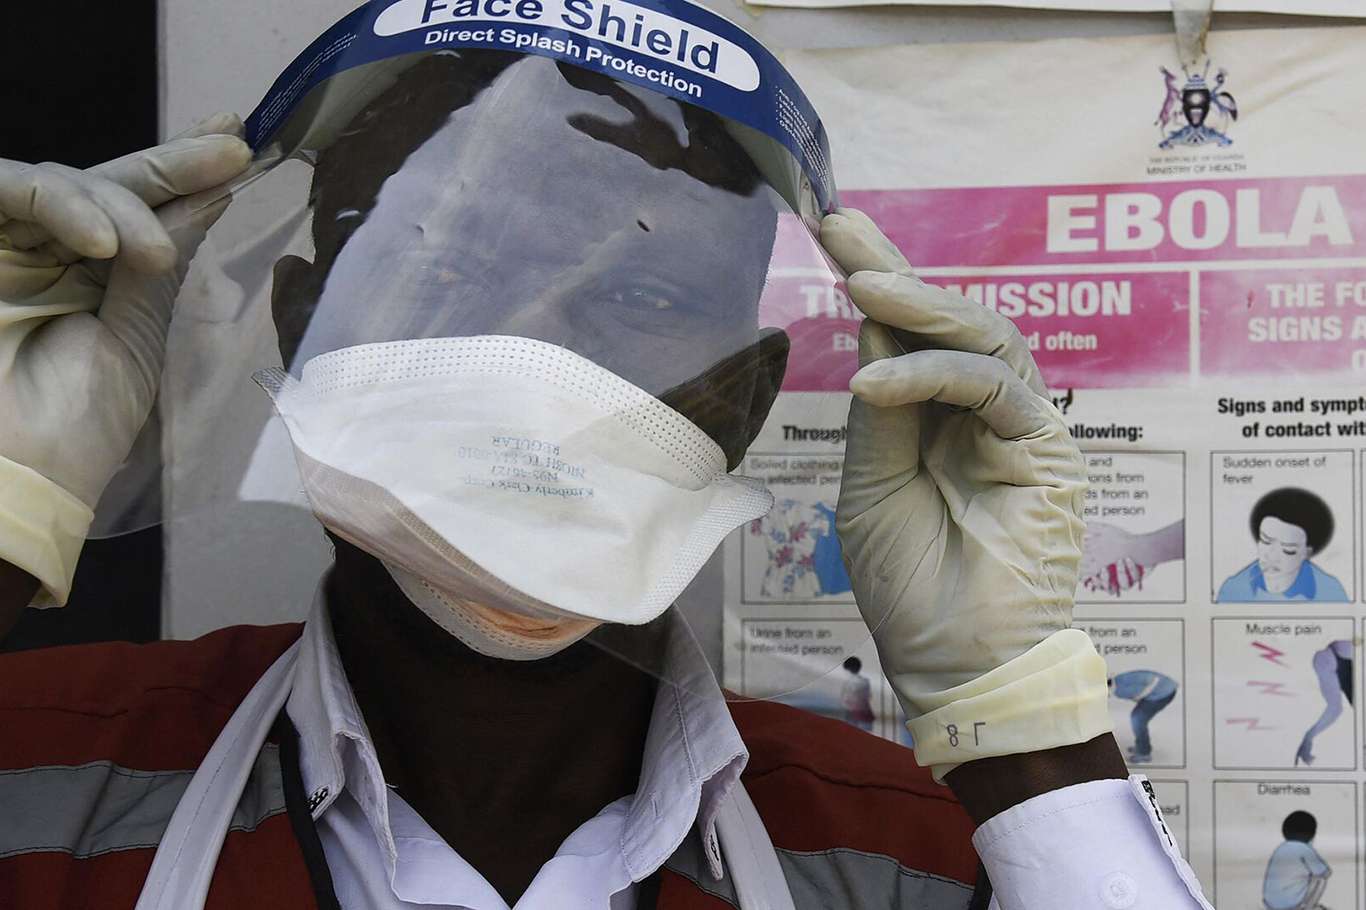 Uganda'da Ebola vaka sayısında artış